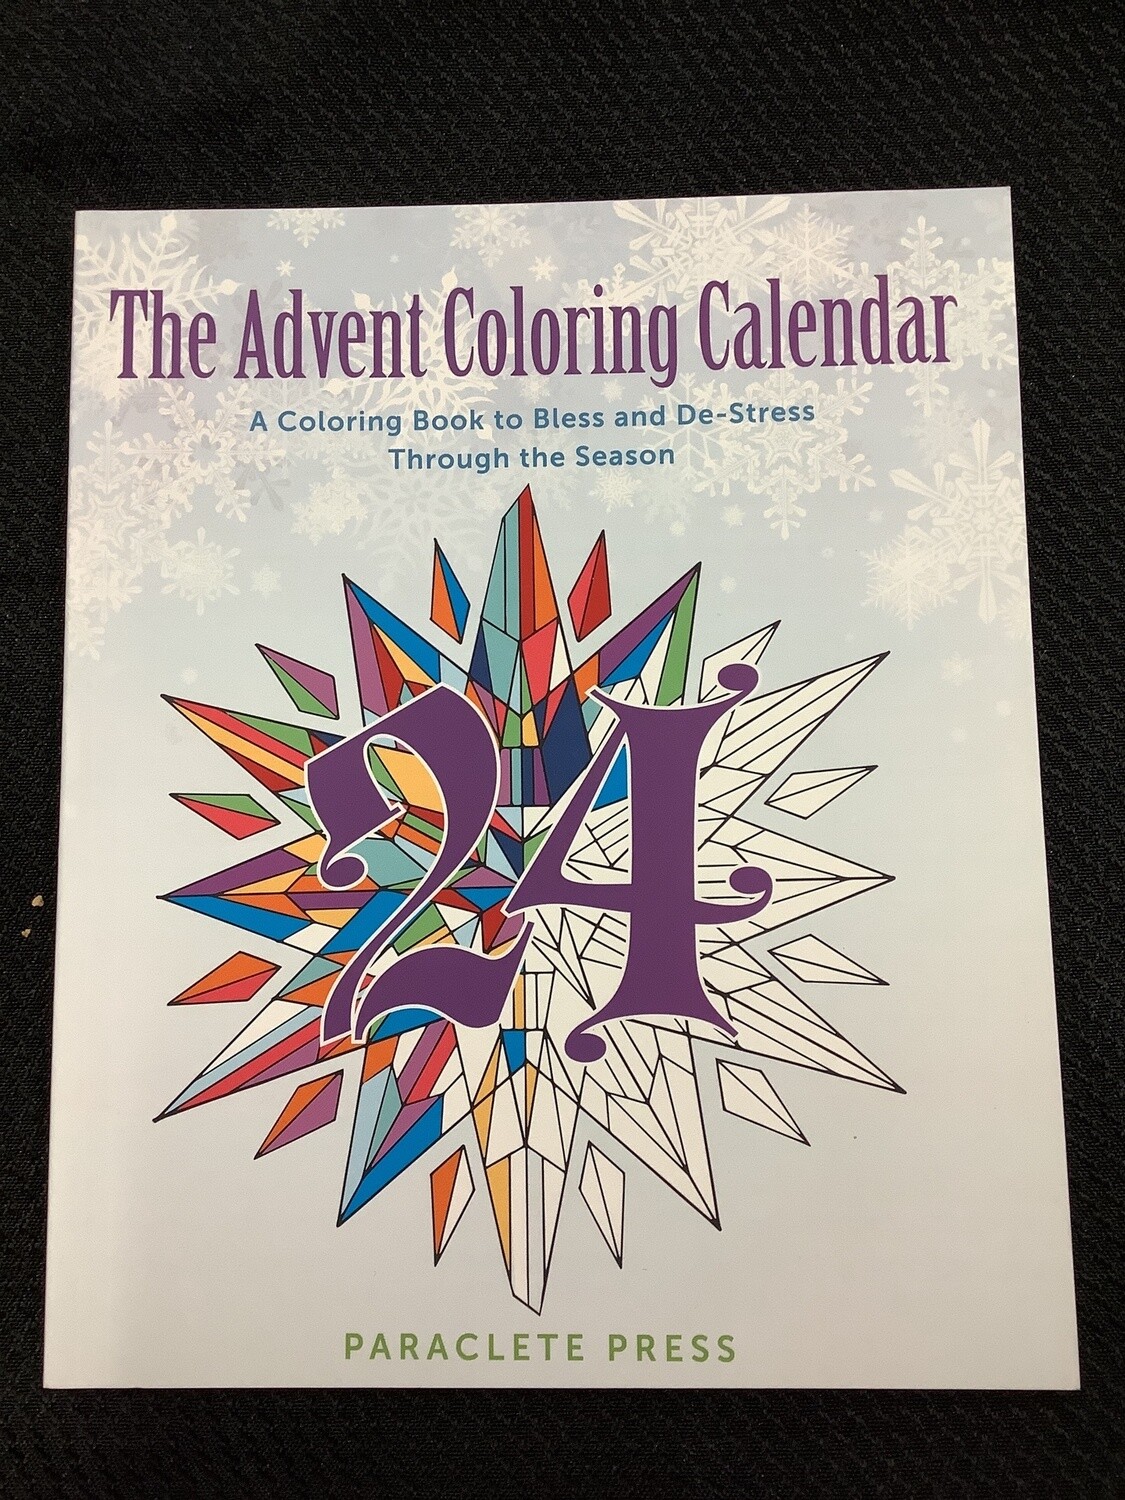 The Advent Coloring Calendar A Coloring Book to Bless and De-Stress Through the Season